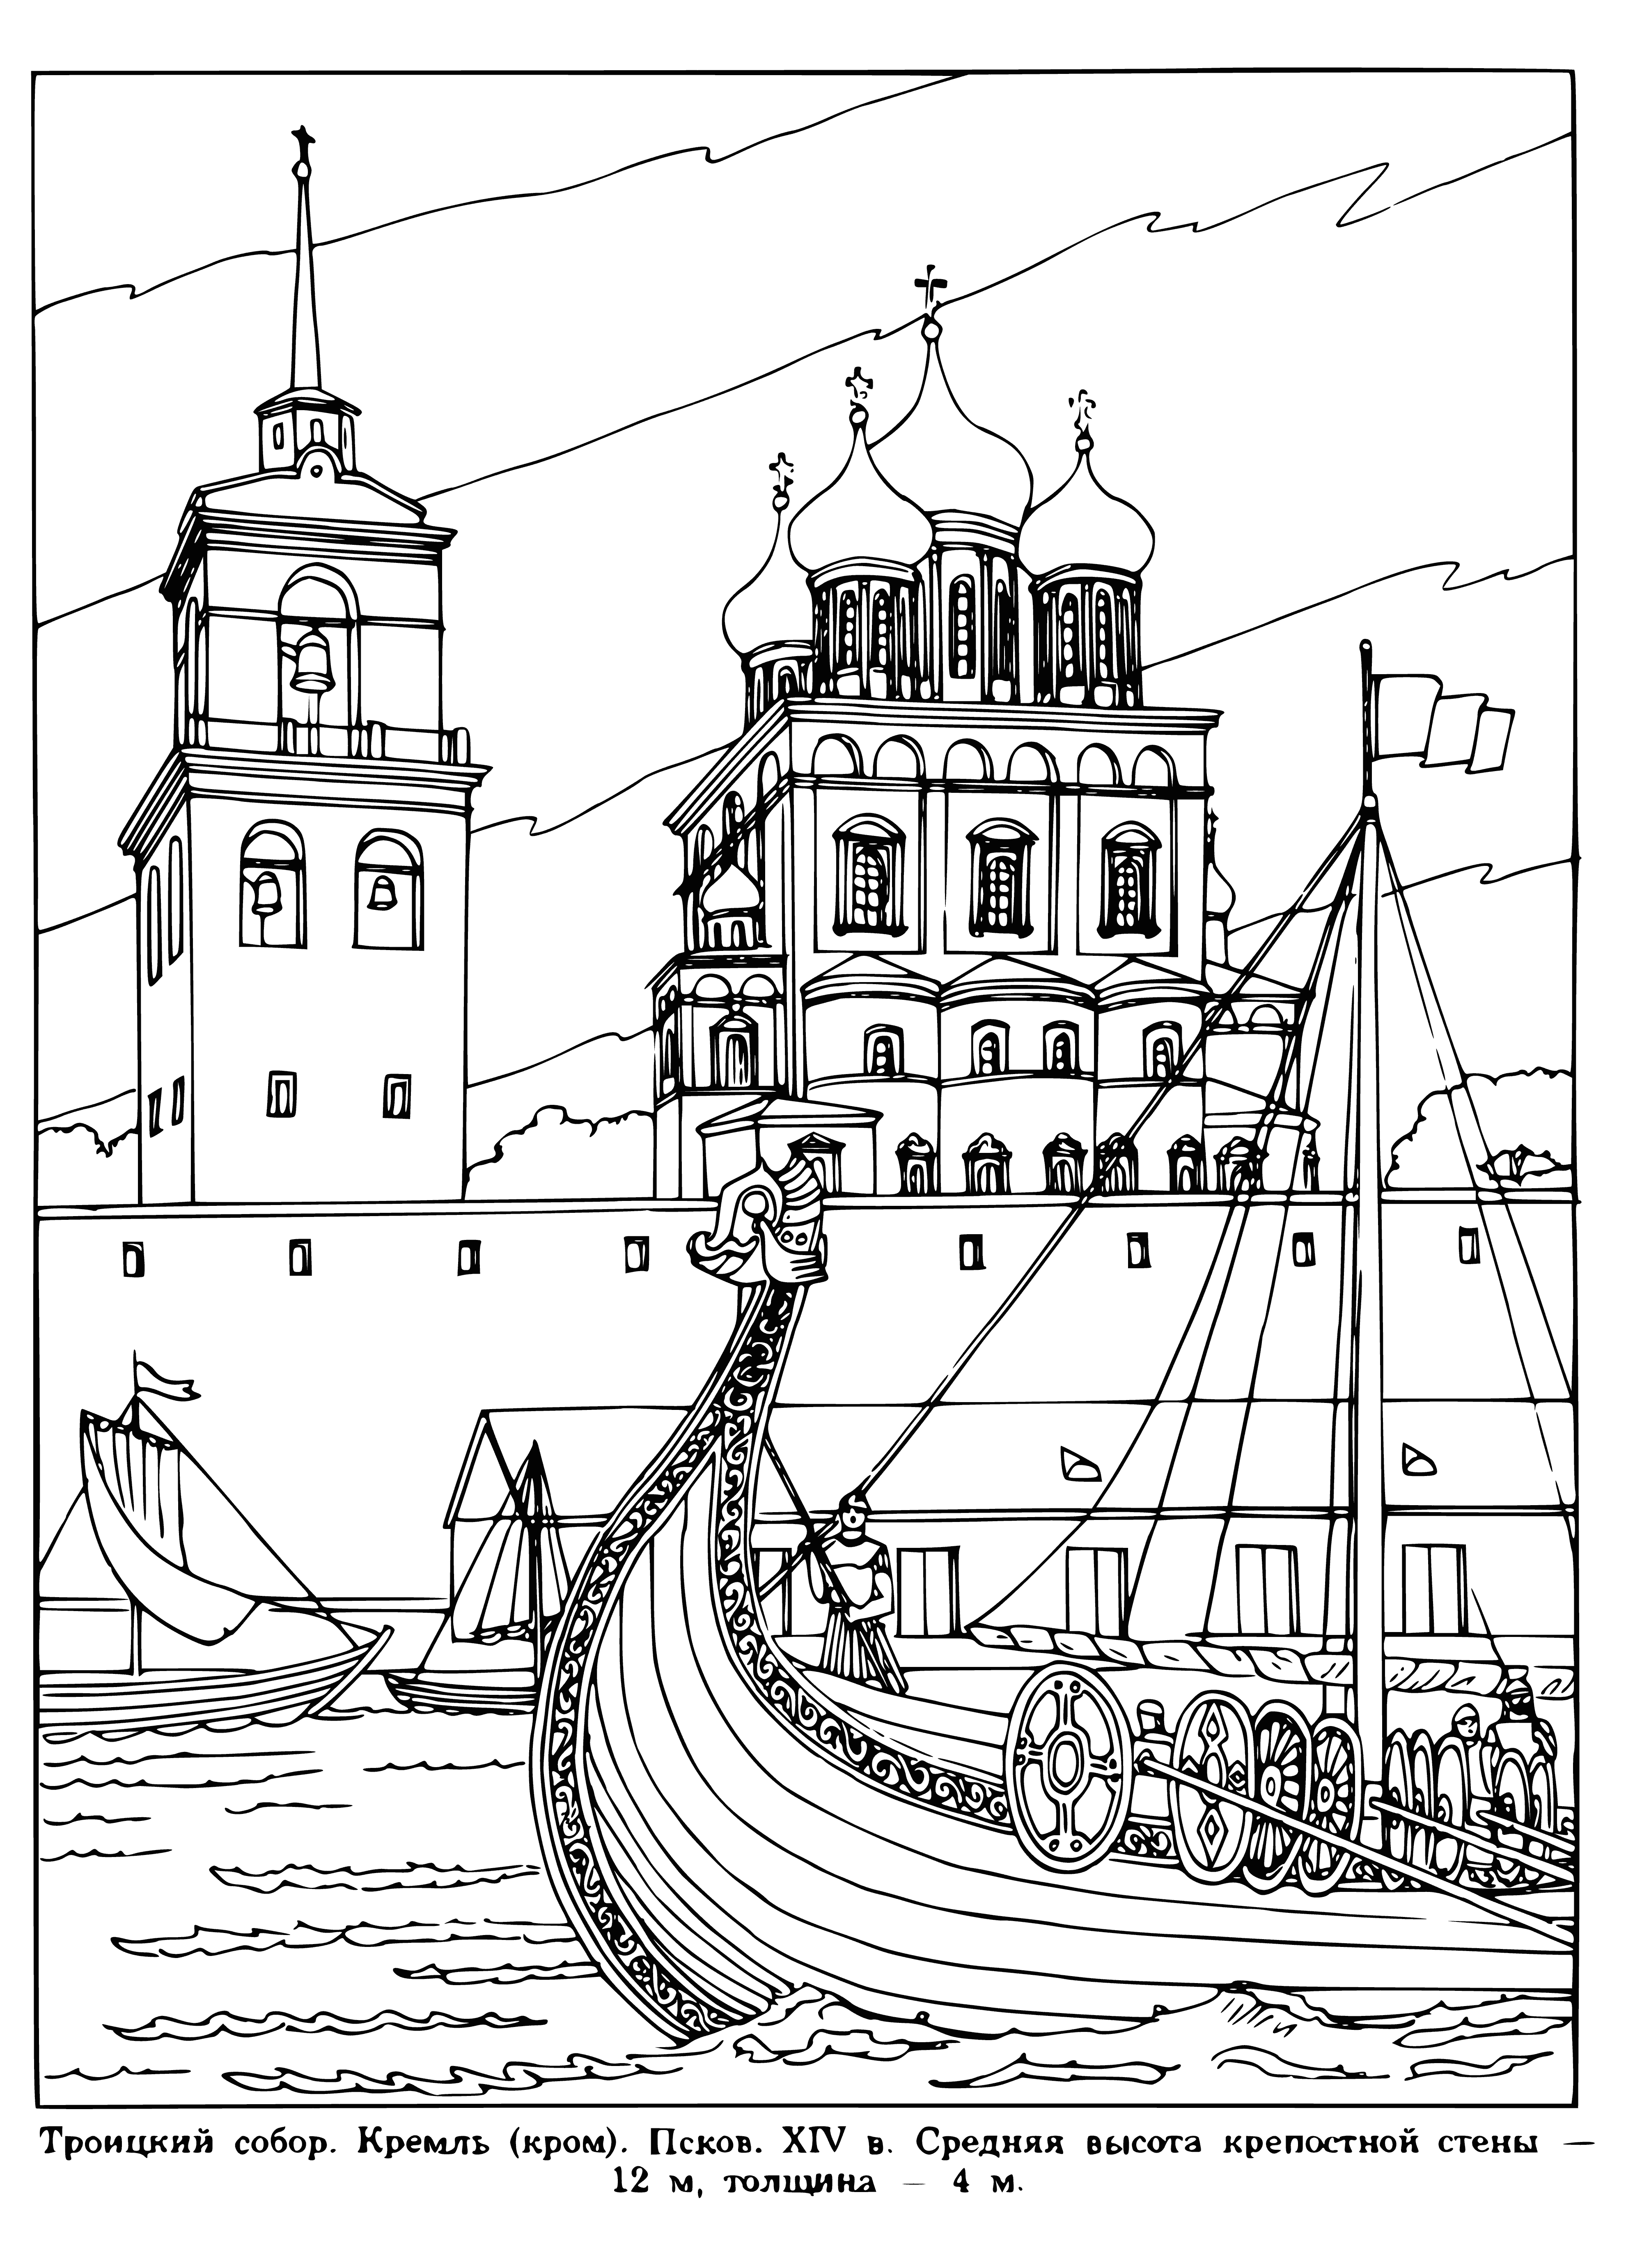 Pskov'daki Trinity Katedrali boyama sayfası